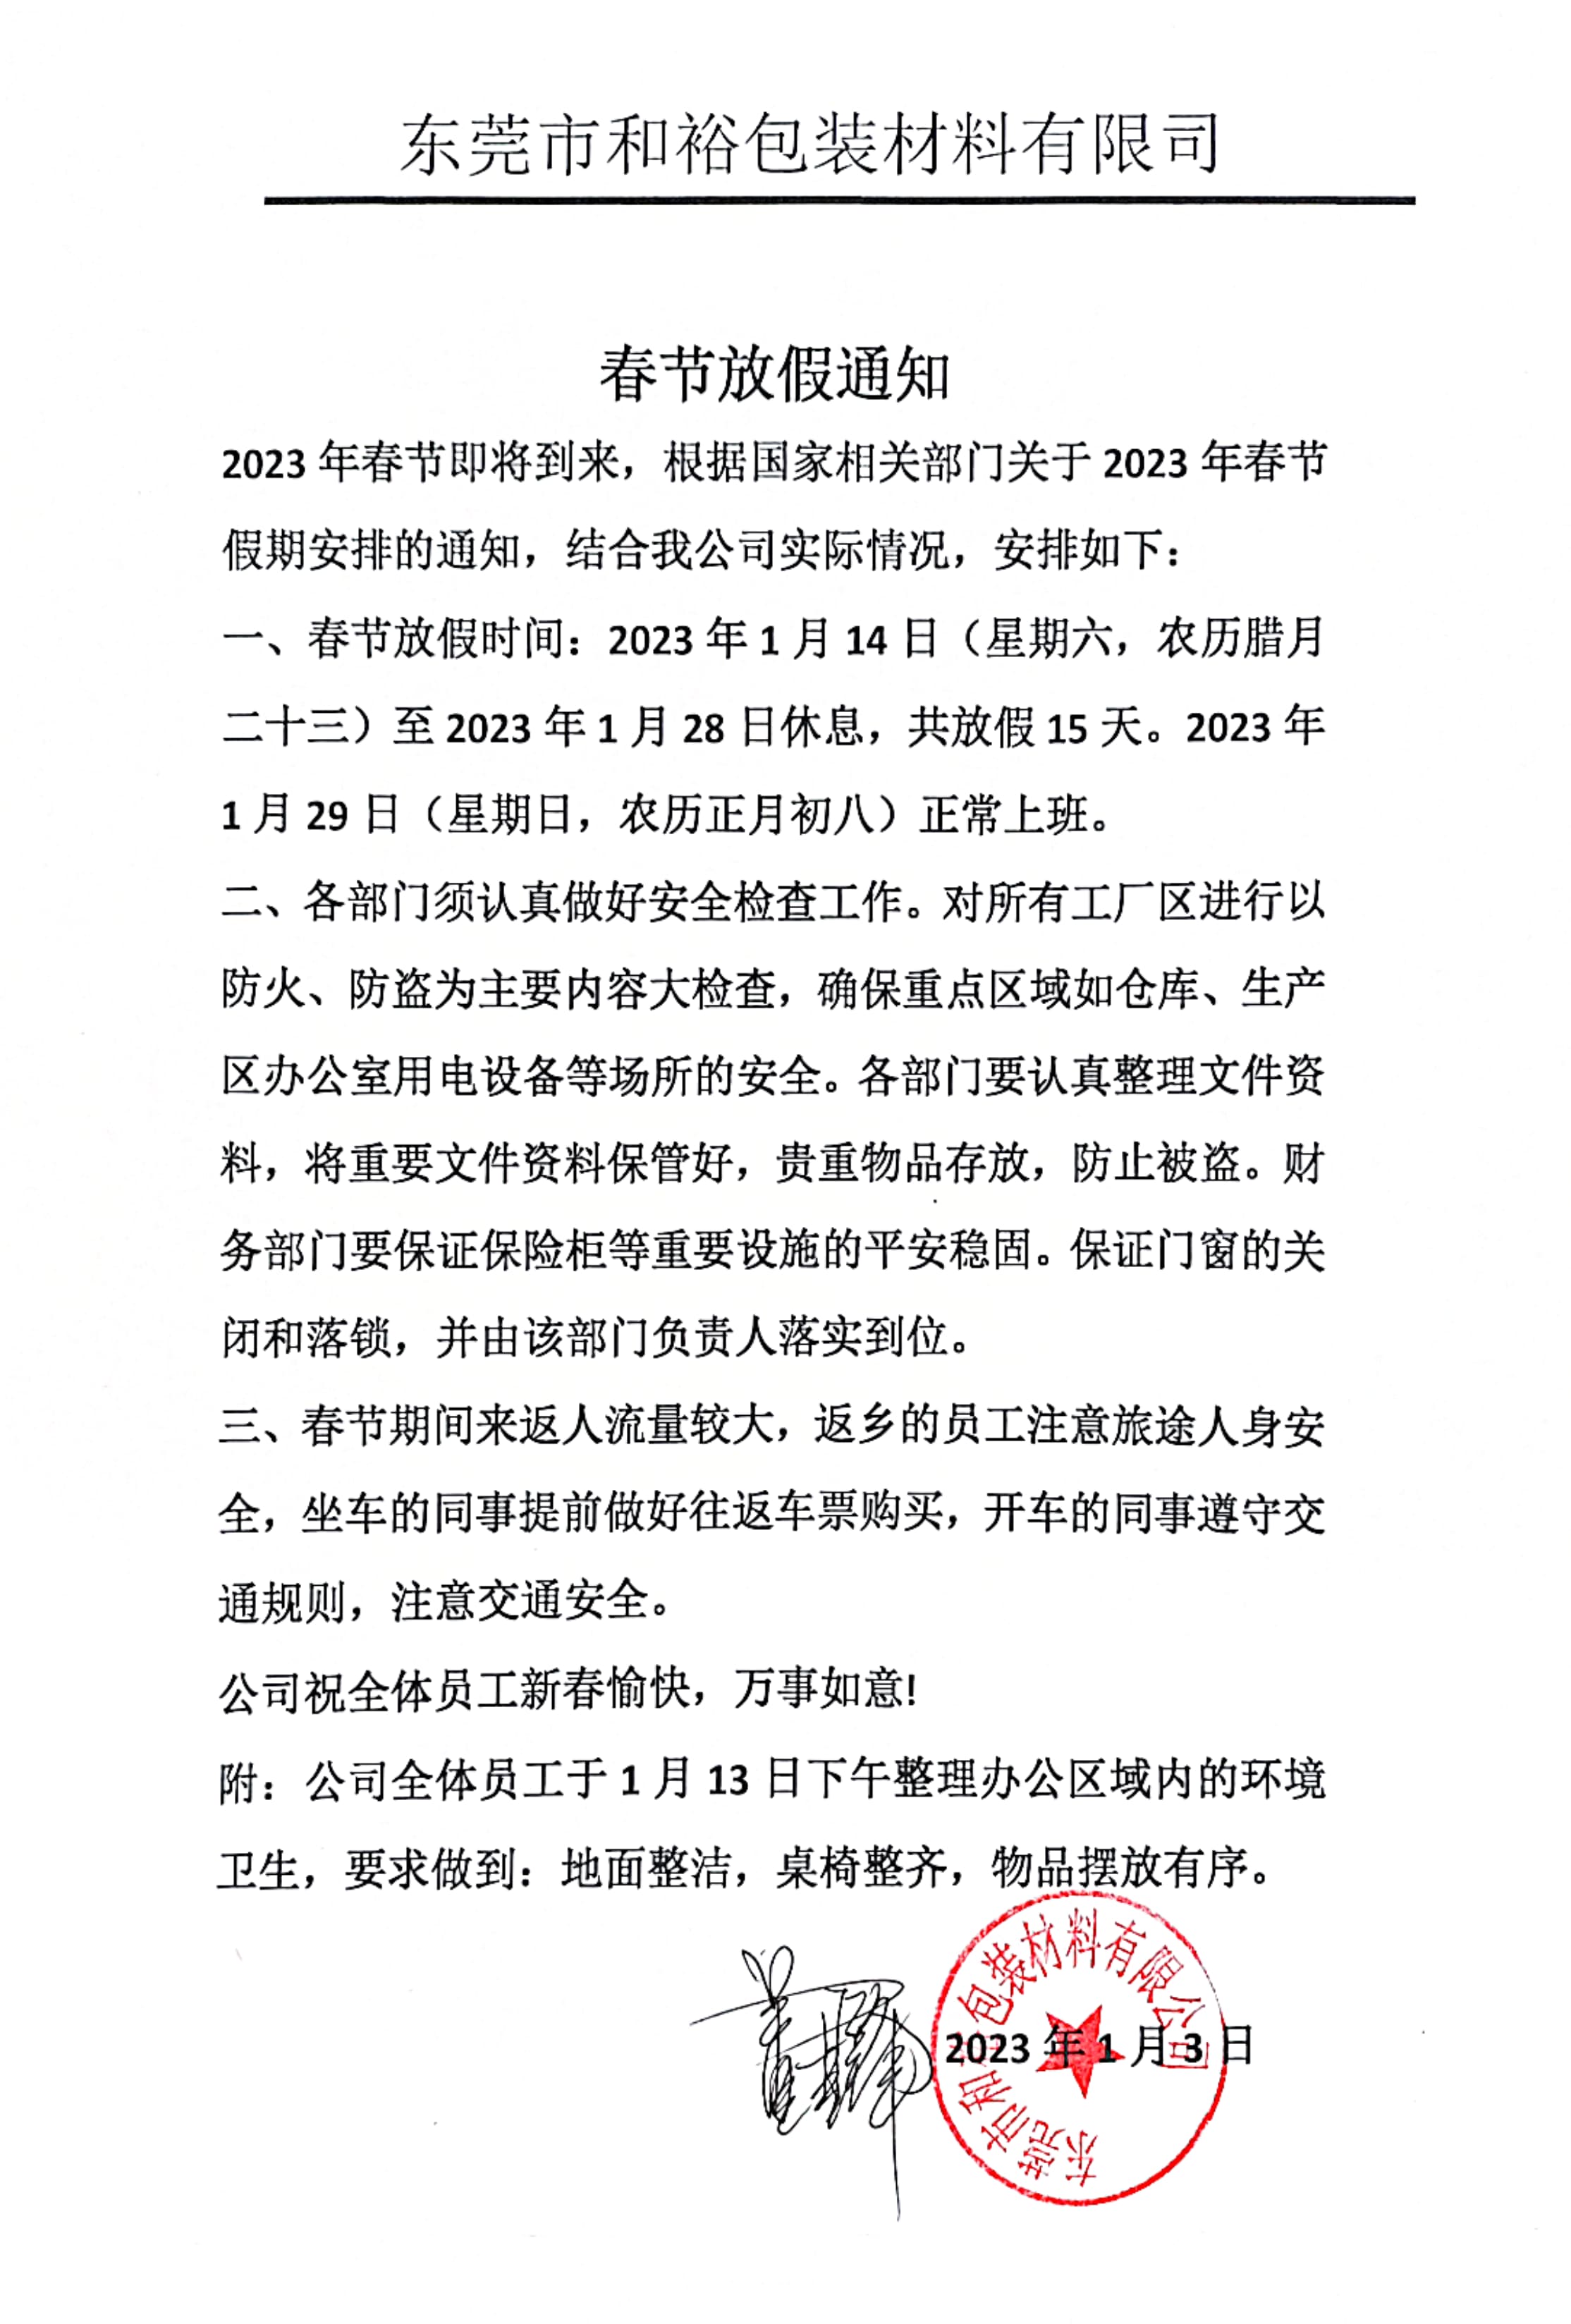 滁州市2023年和裕包装春节放假通知